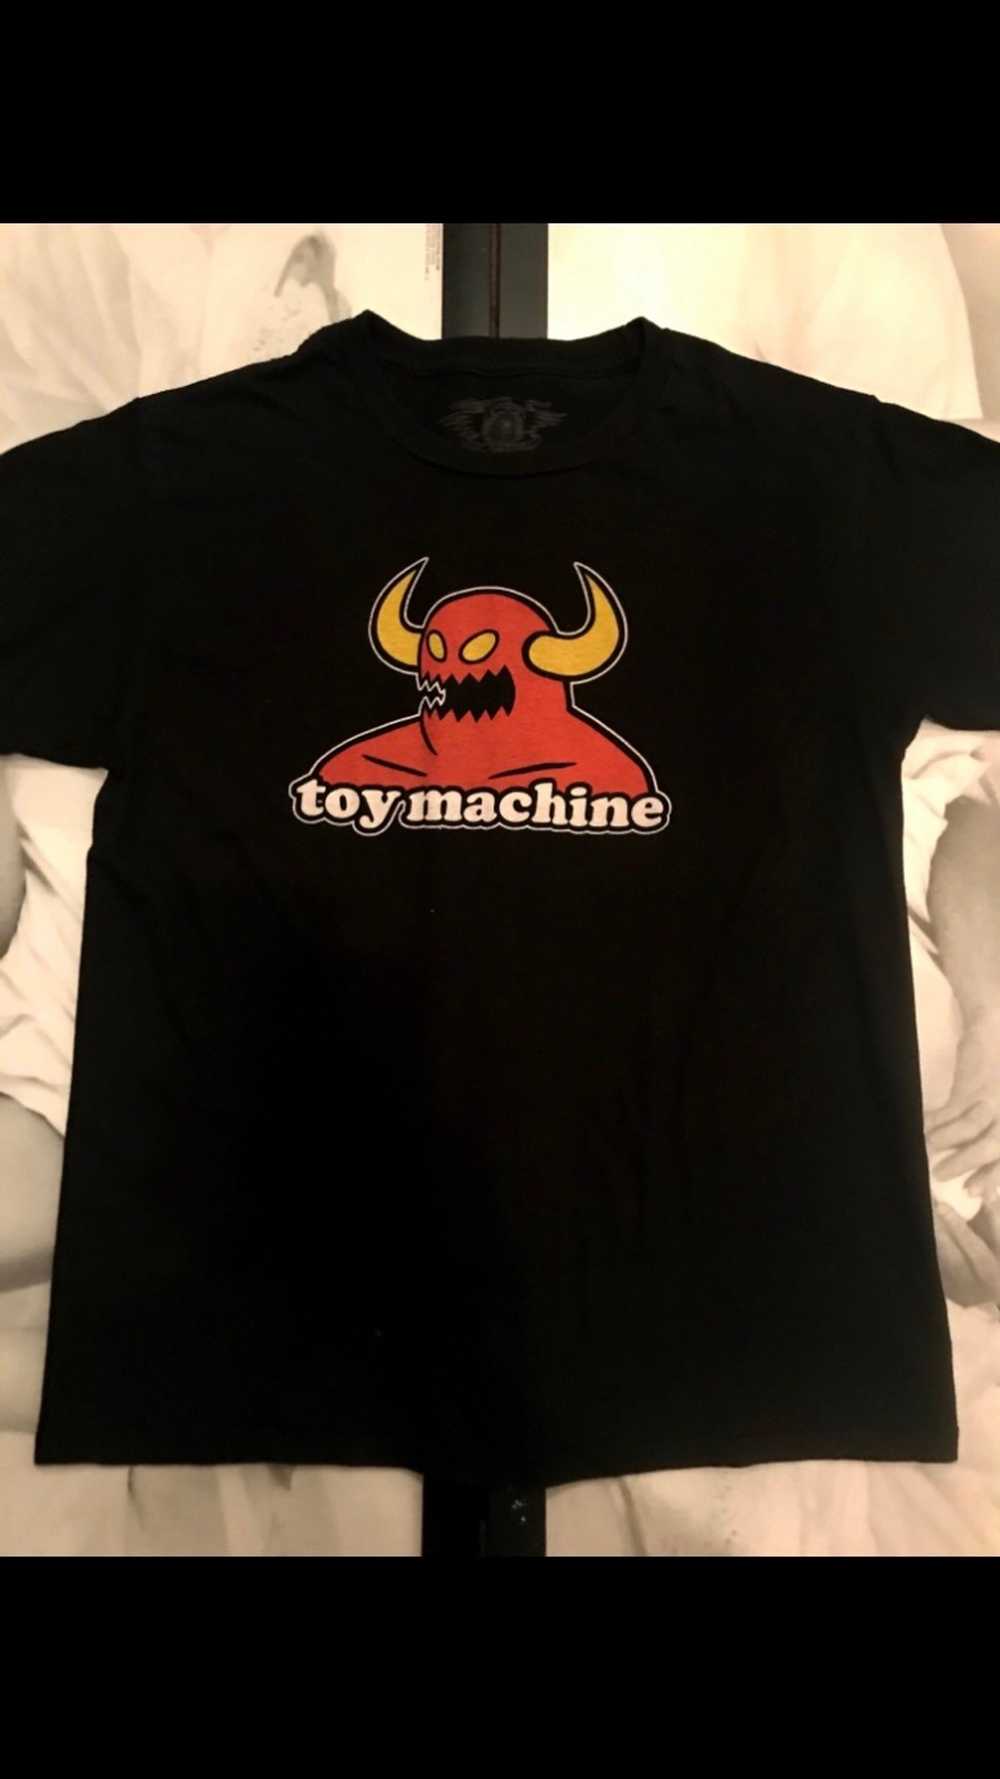 Toy Machine VTG toy machine tee - image 2